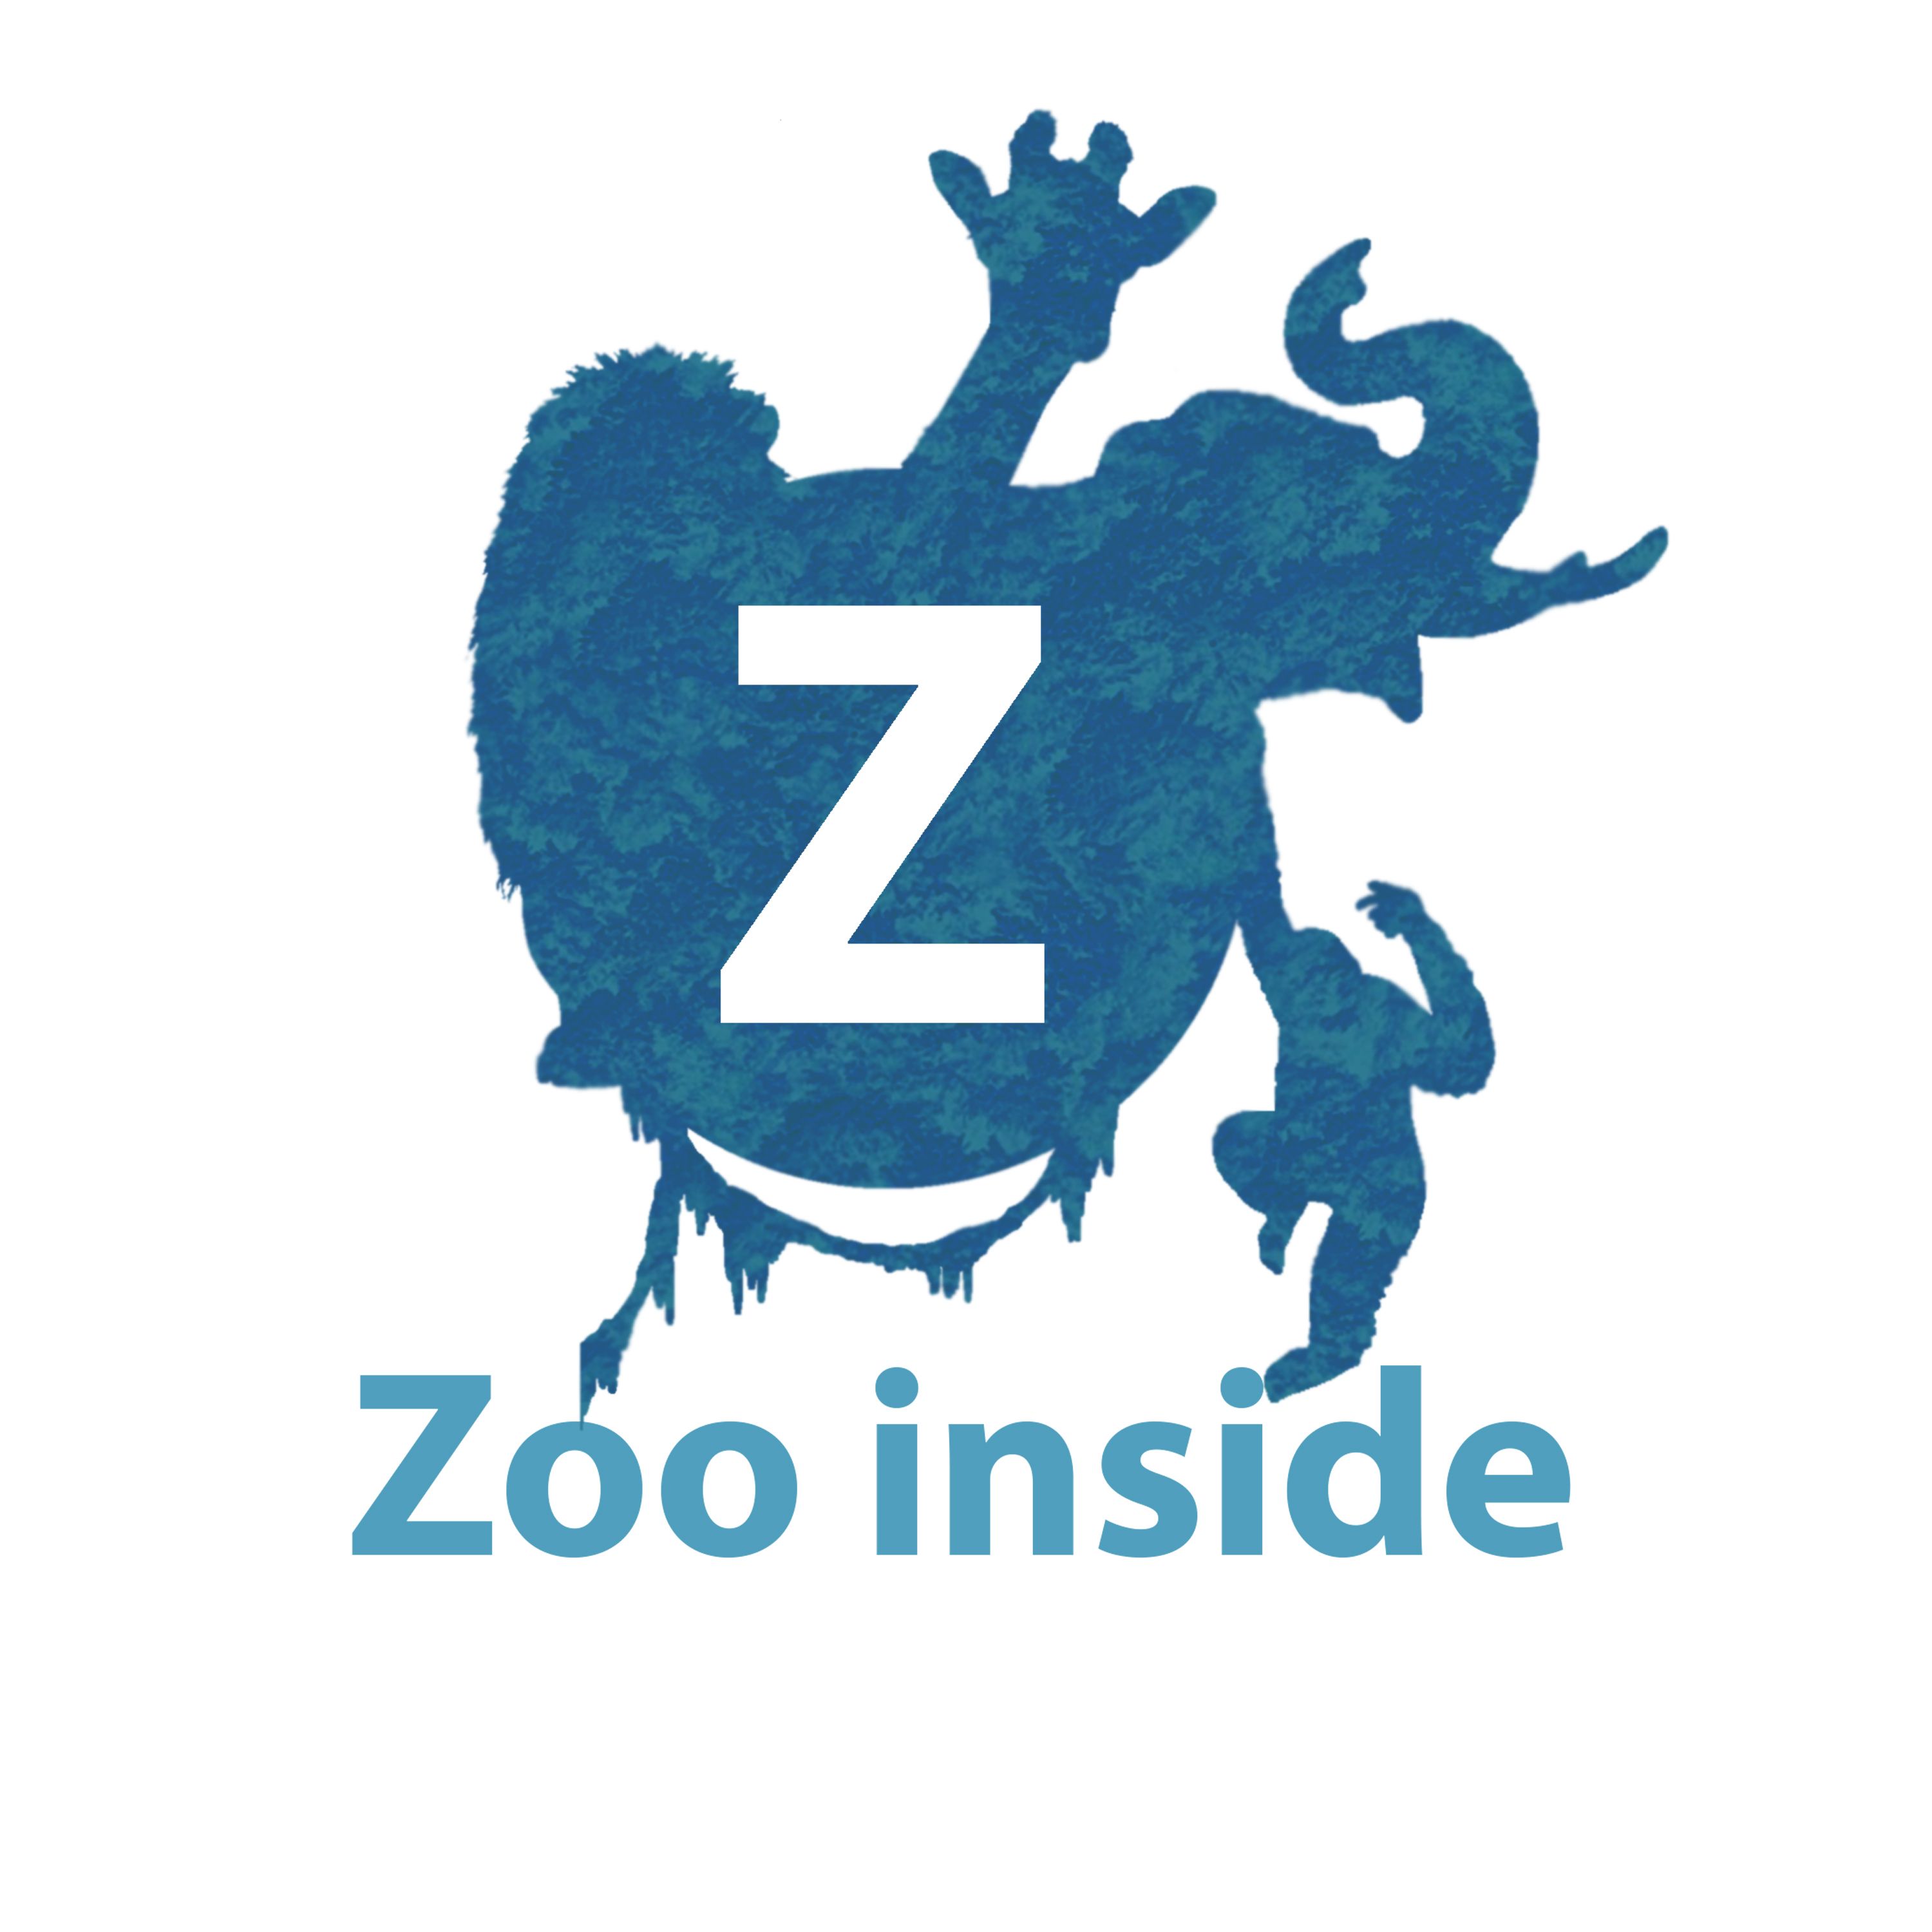 Zooinside logo